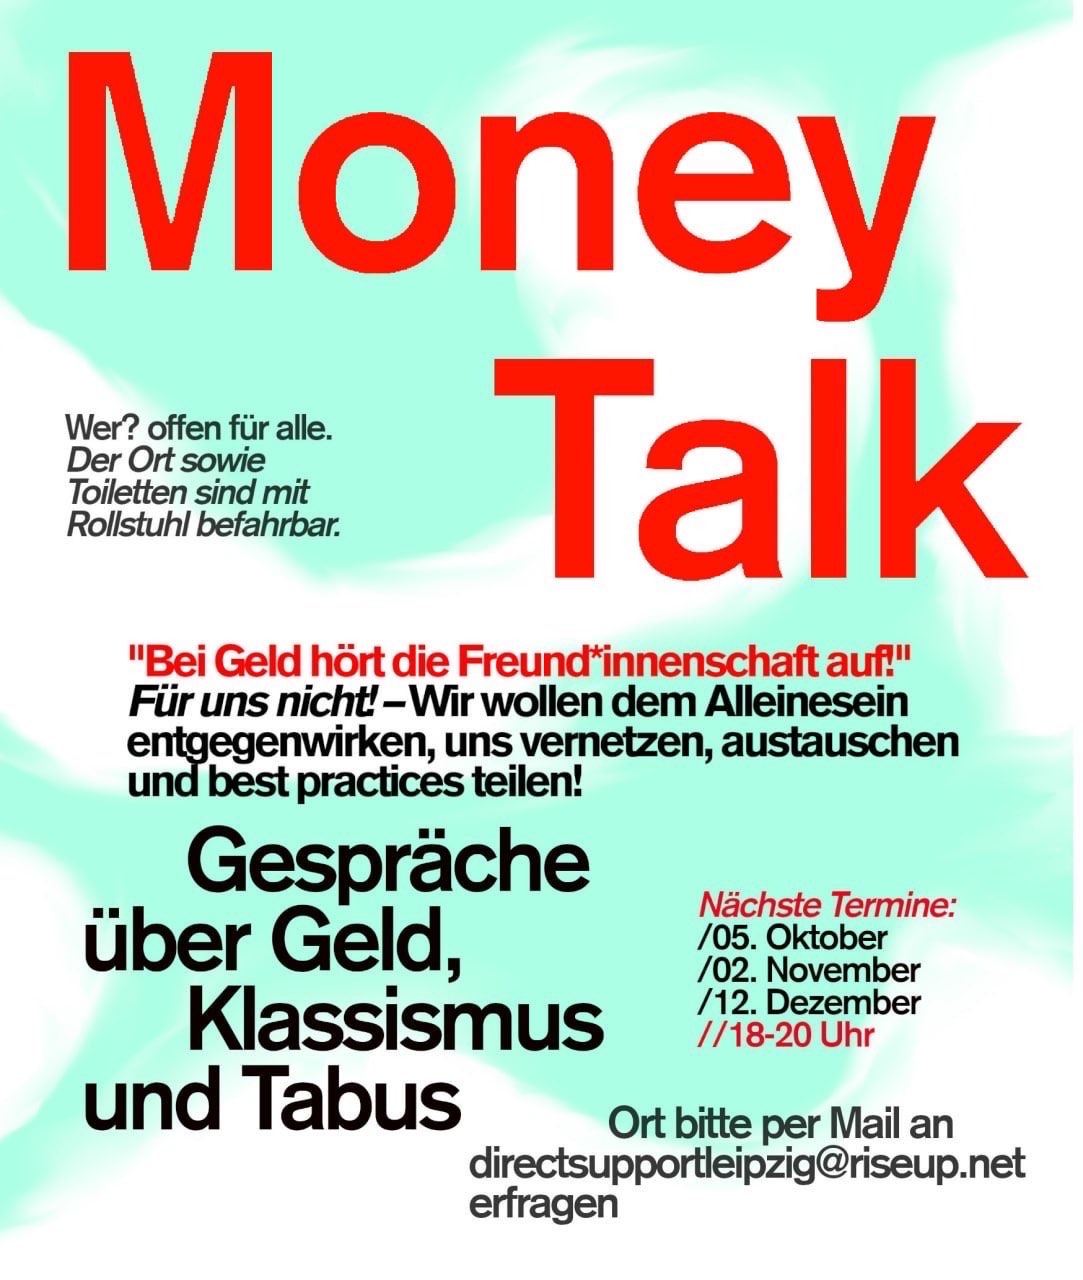 Money Talk - "nicht arm - nicht reich"